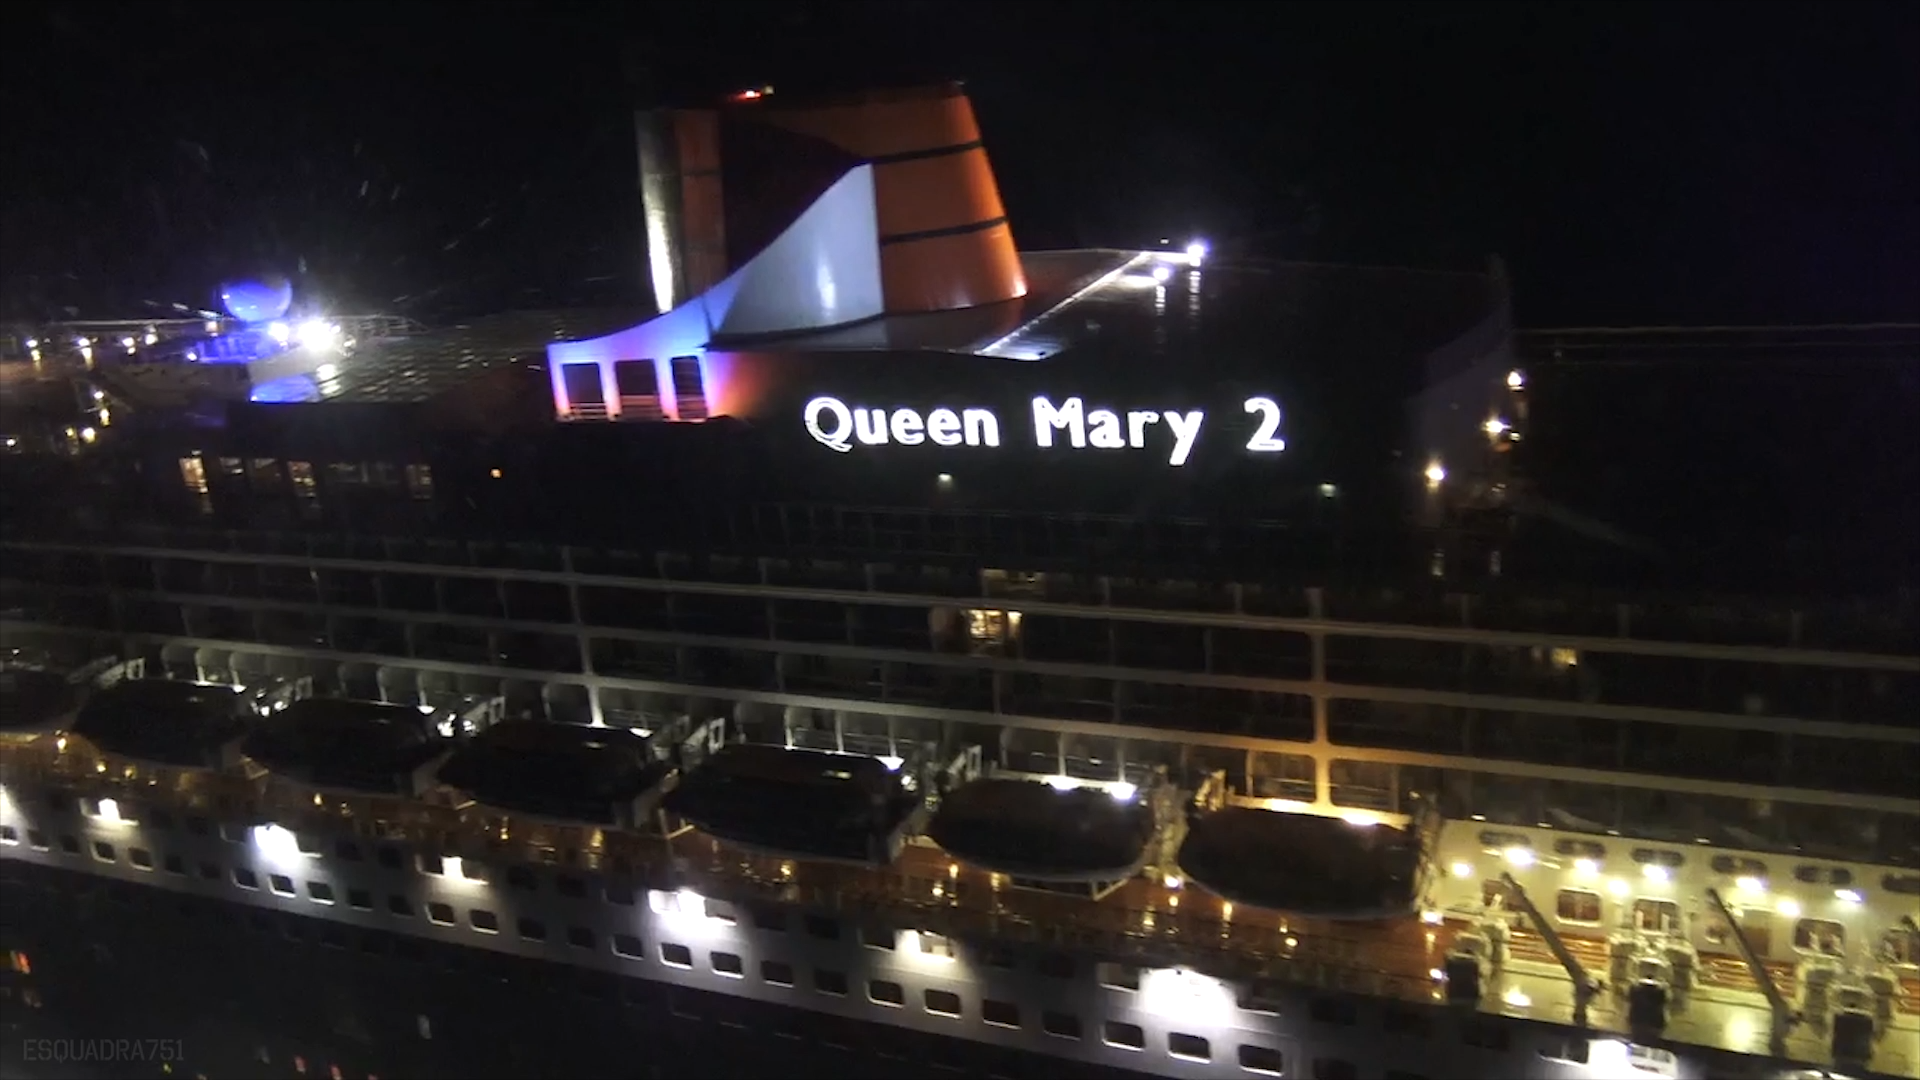 Fora Area resgata passageiro doente do navio "Queen Mary 2"